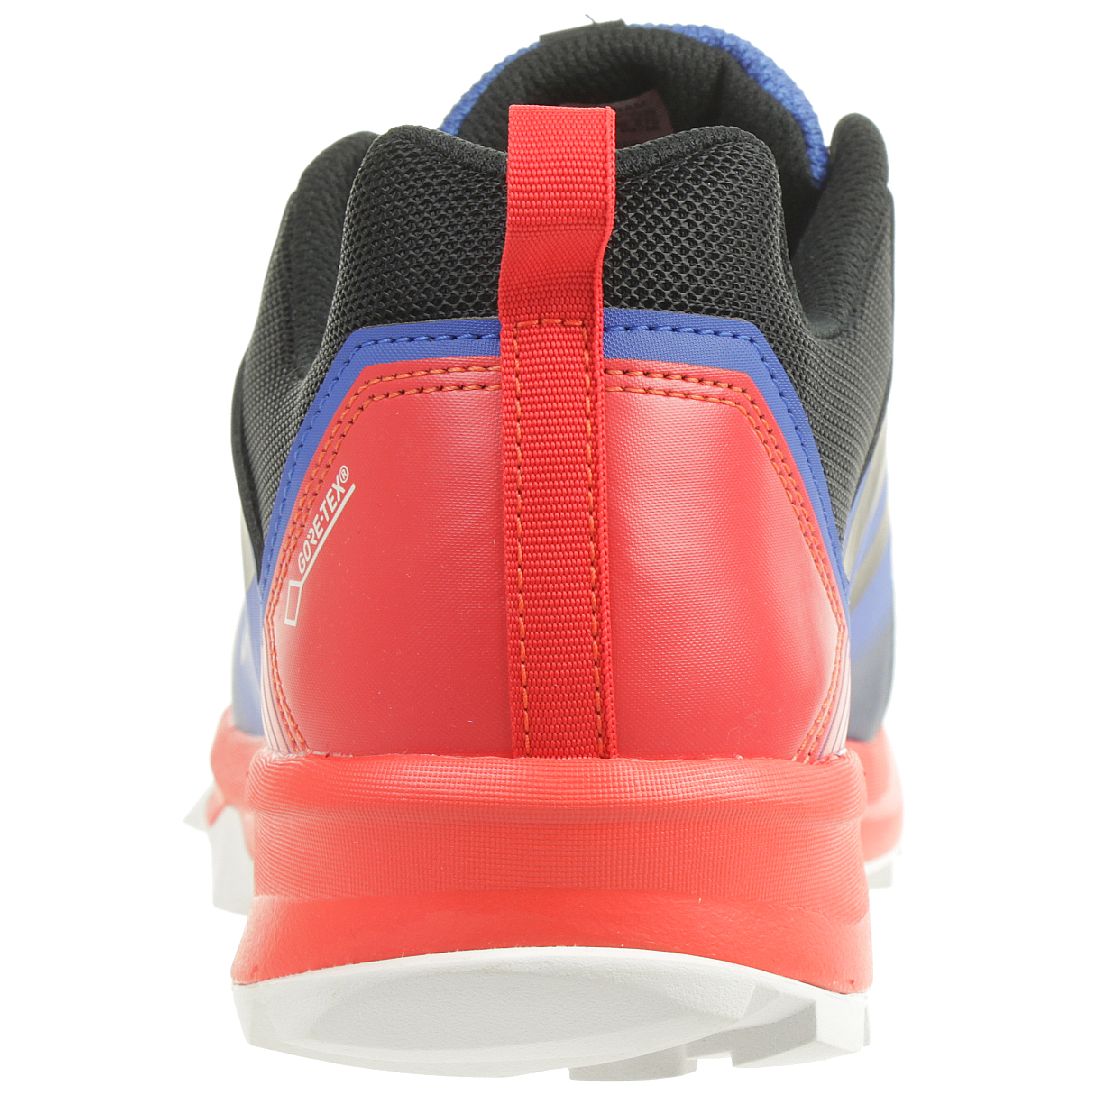 Adidas Herren Terrex Tracerocker GTX Trailrunning Schuh Wanderschuh Sneaker 